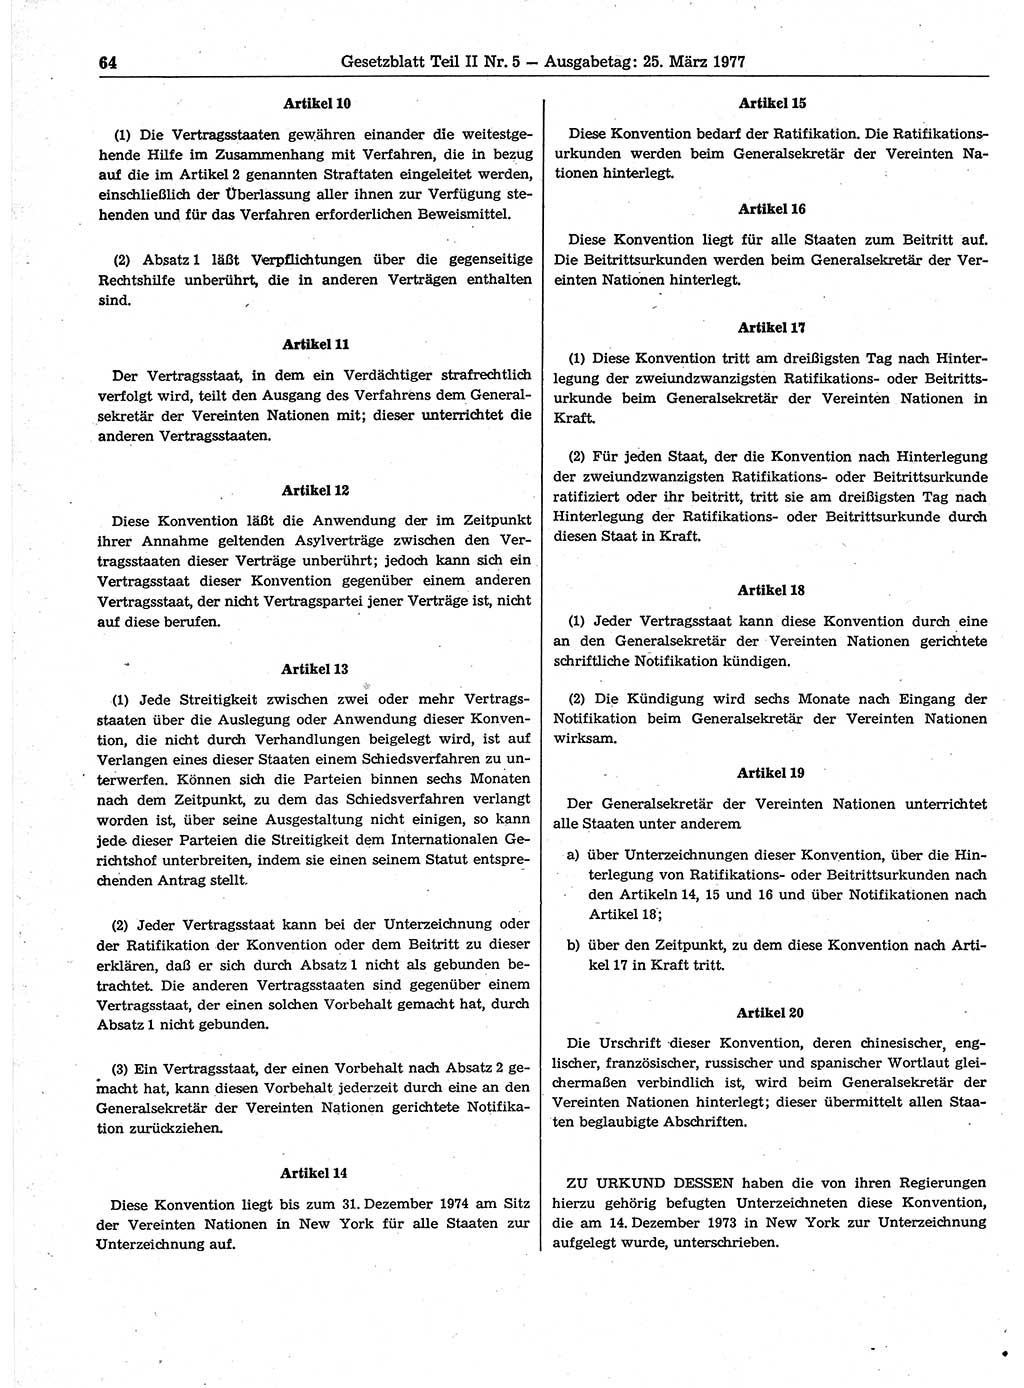 Gesetzblatt (GBl.) der Deutschen Demokratischen Republik (DDR) Teil ⅠⅠ 1977, Seite 64 (GBl. DDR ⅠⅠ 1977, S. 64)